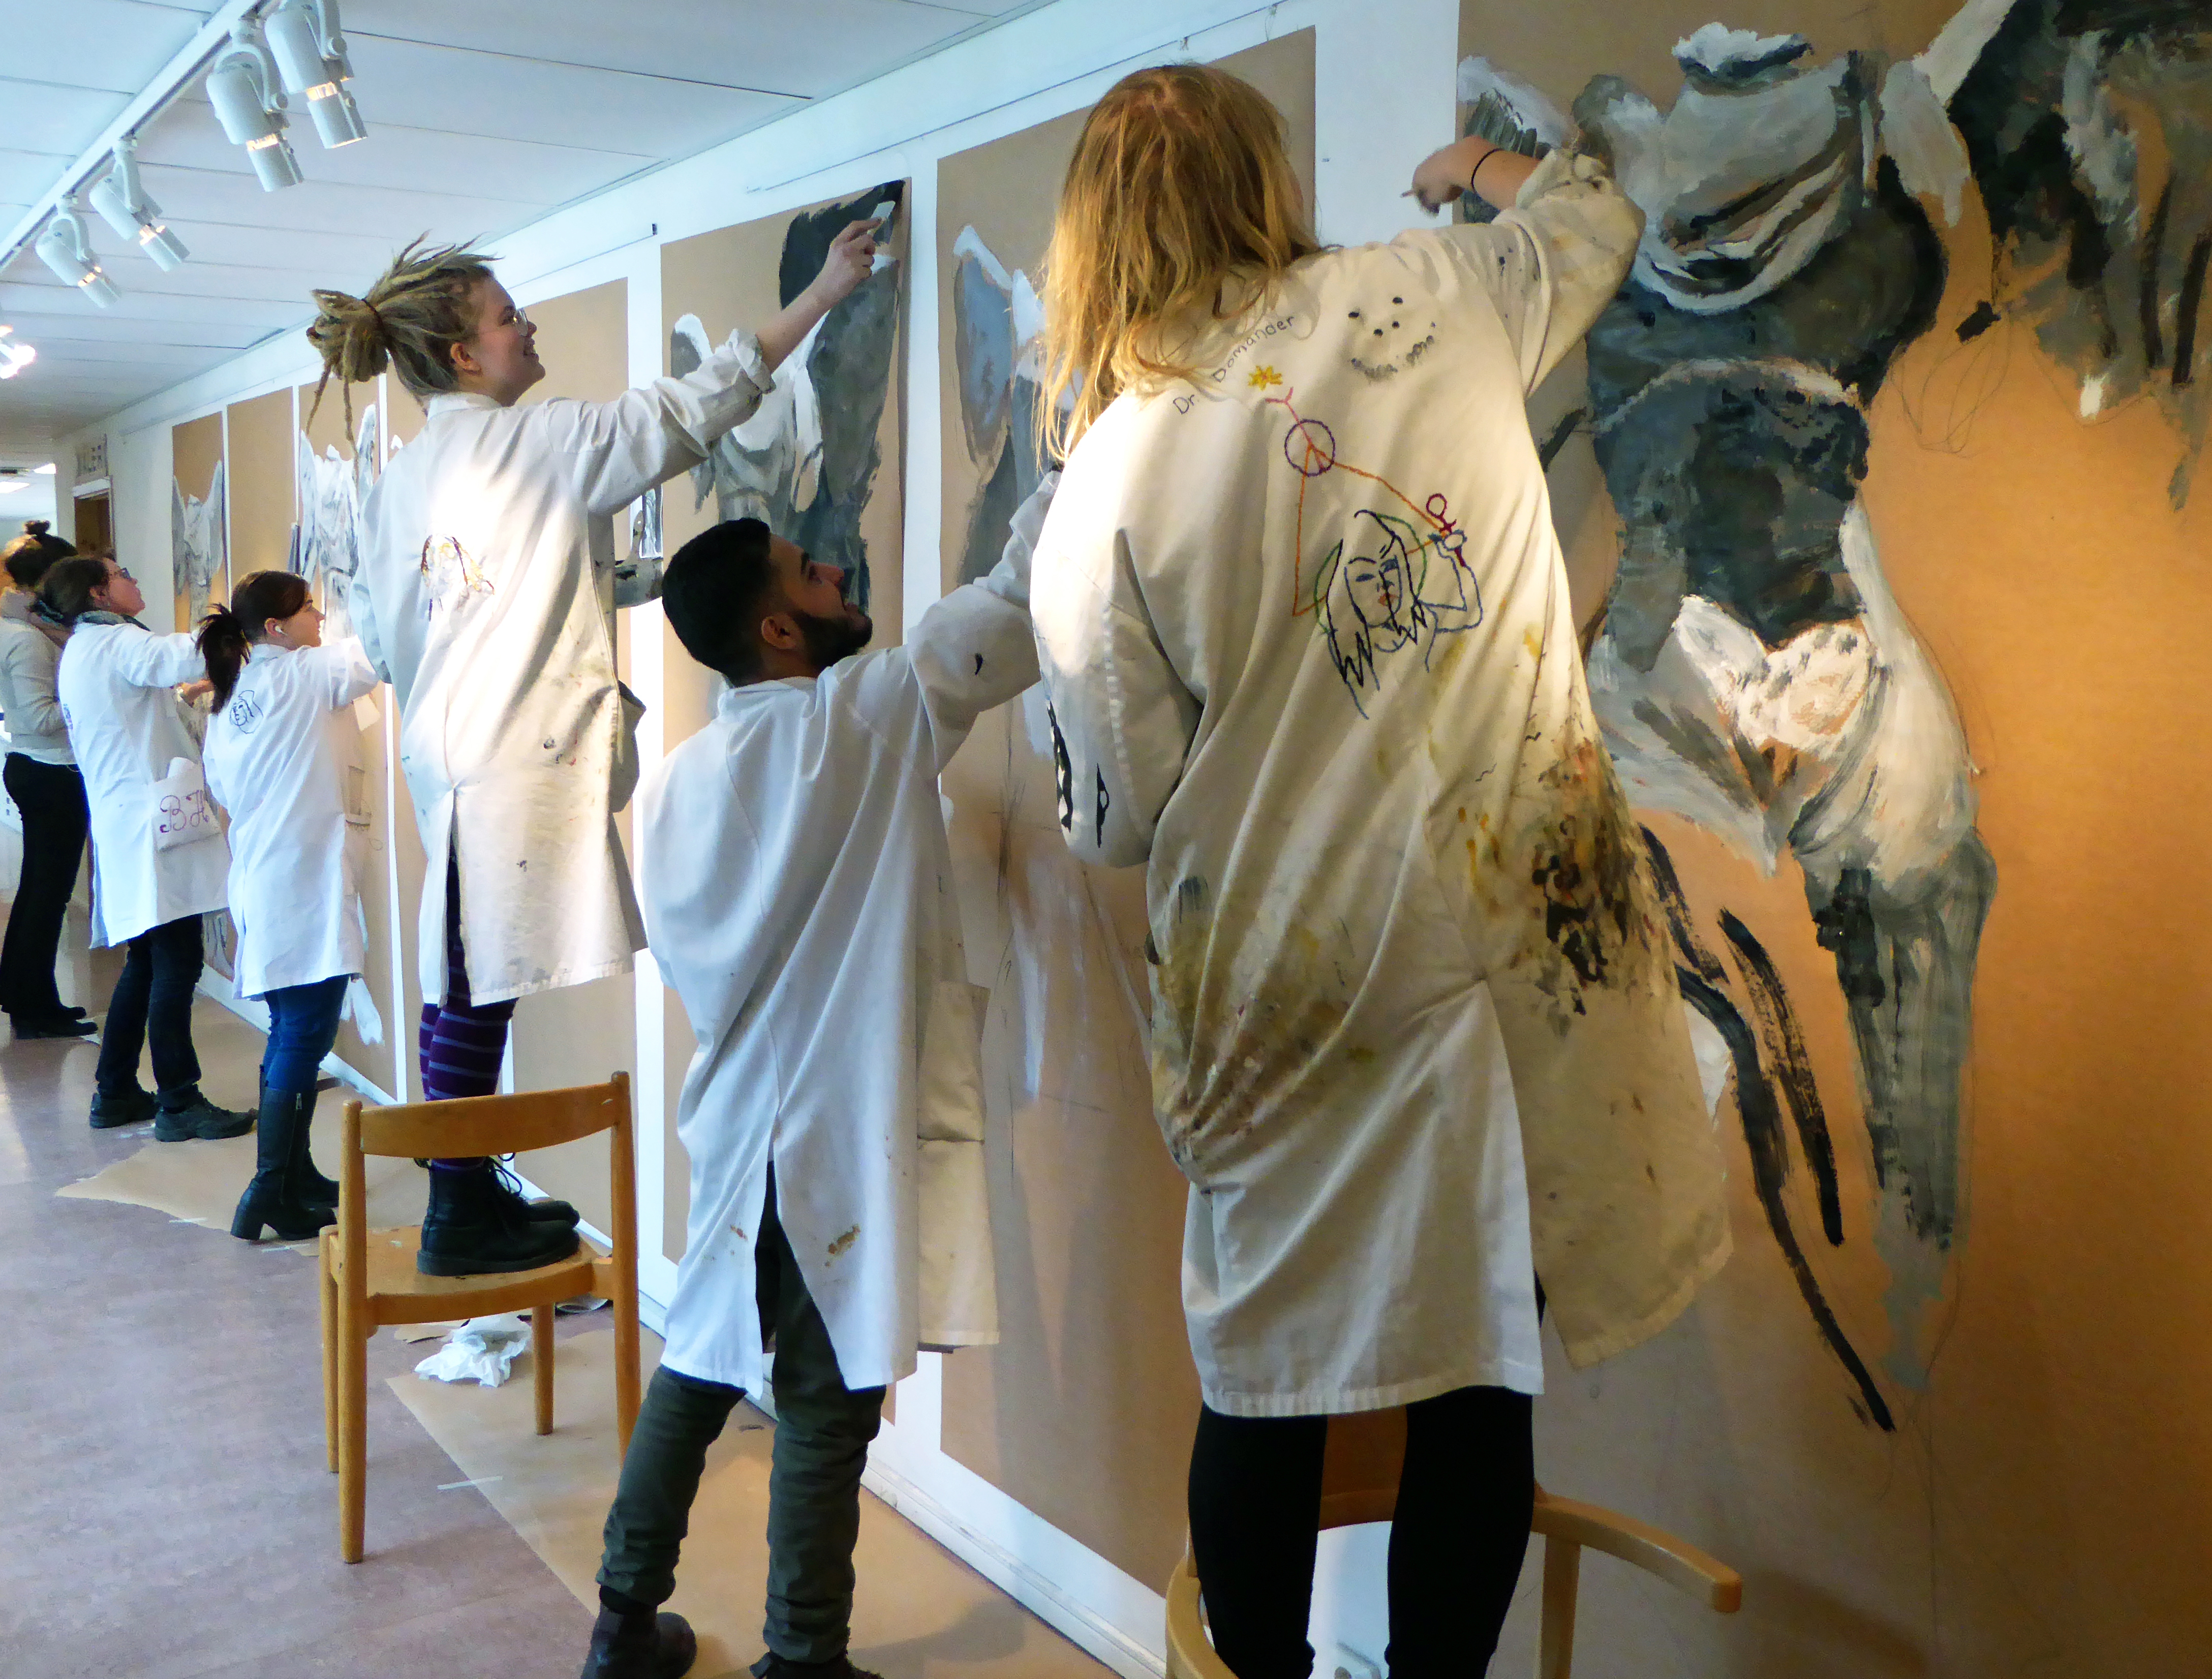 Elever på en konstskola målar var sitt verk på en vägg i en korridor.